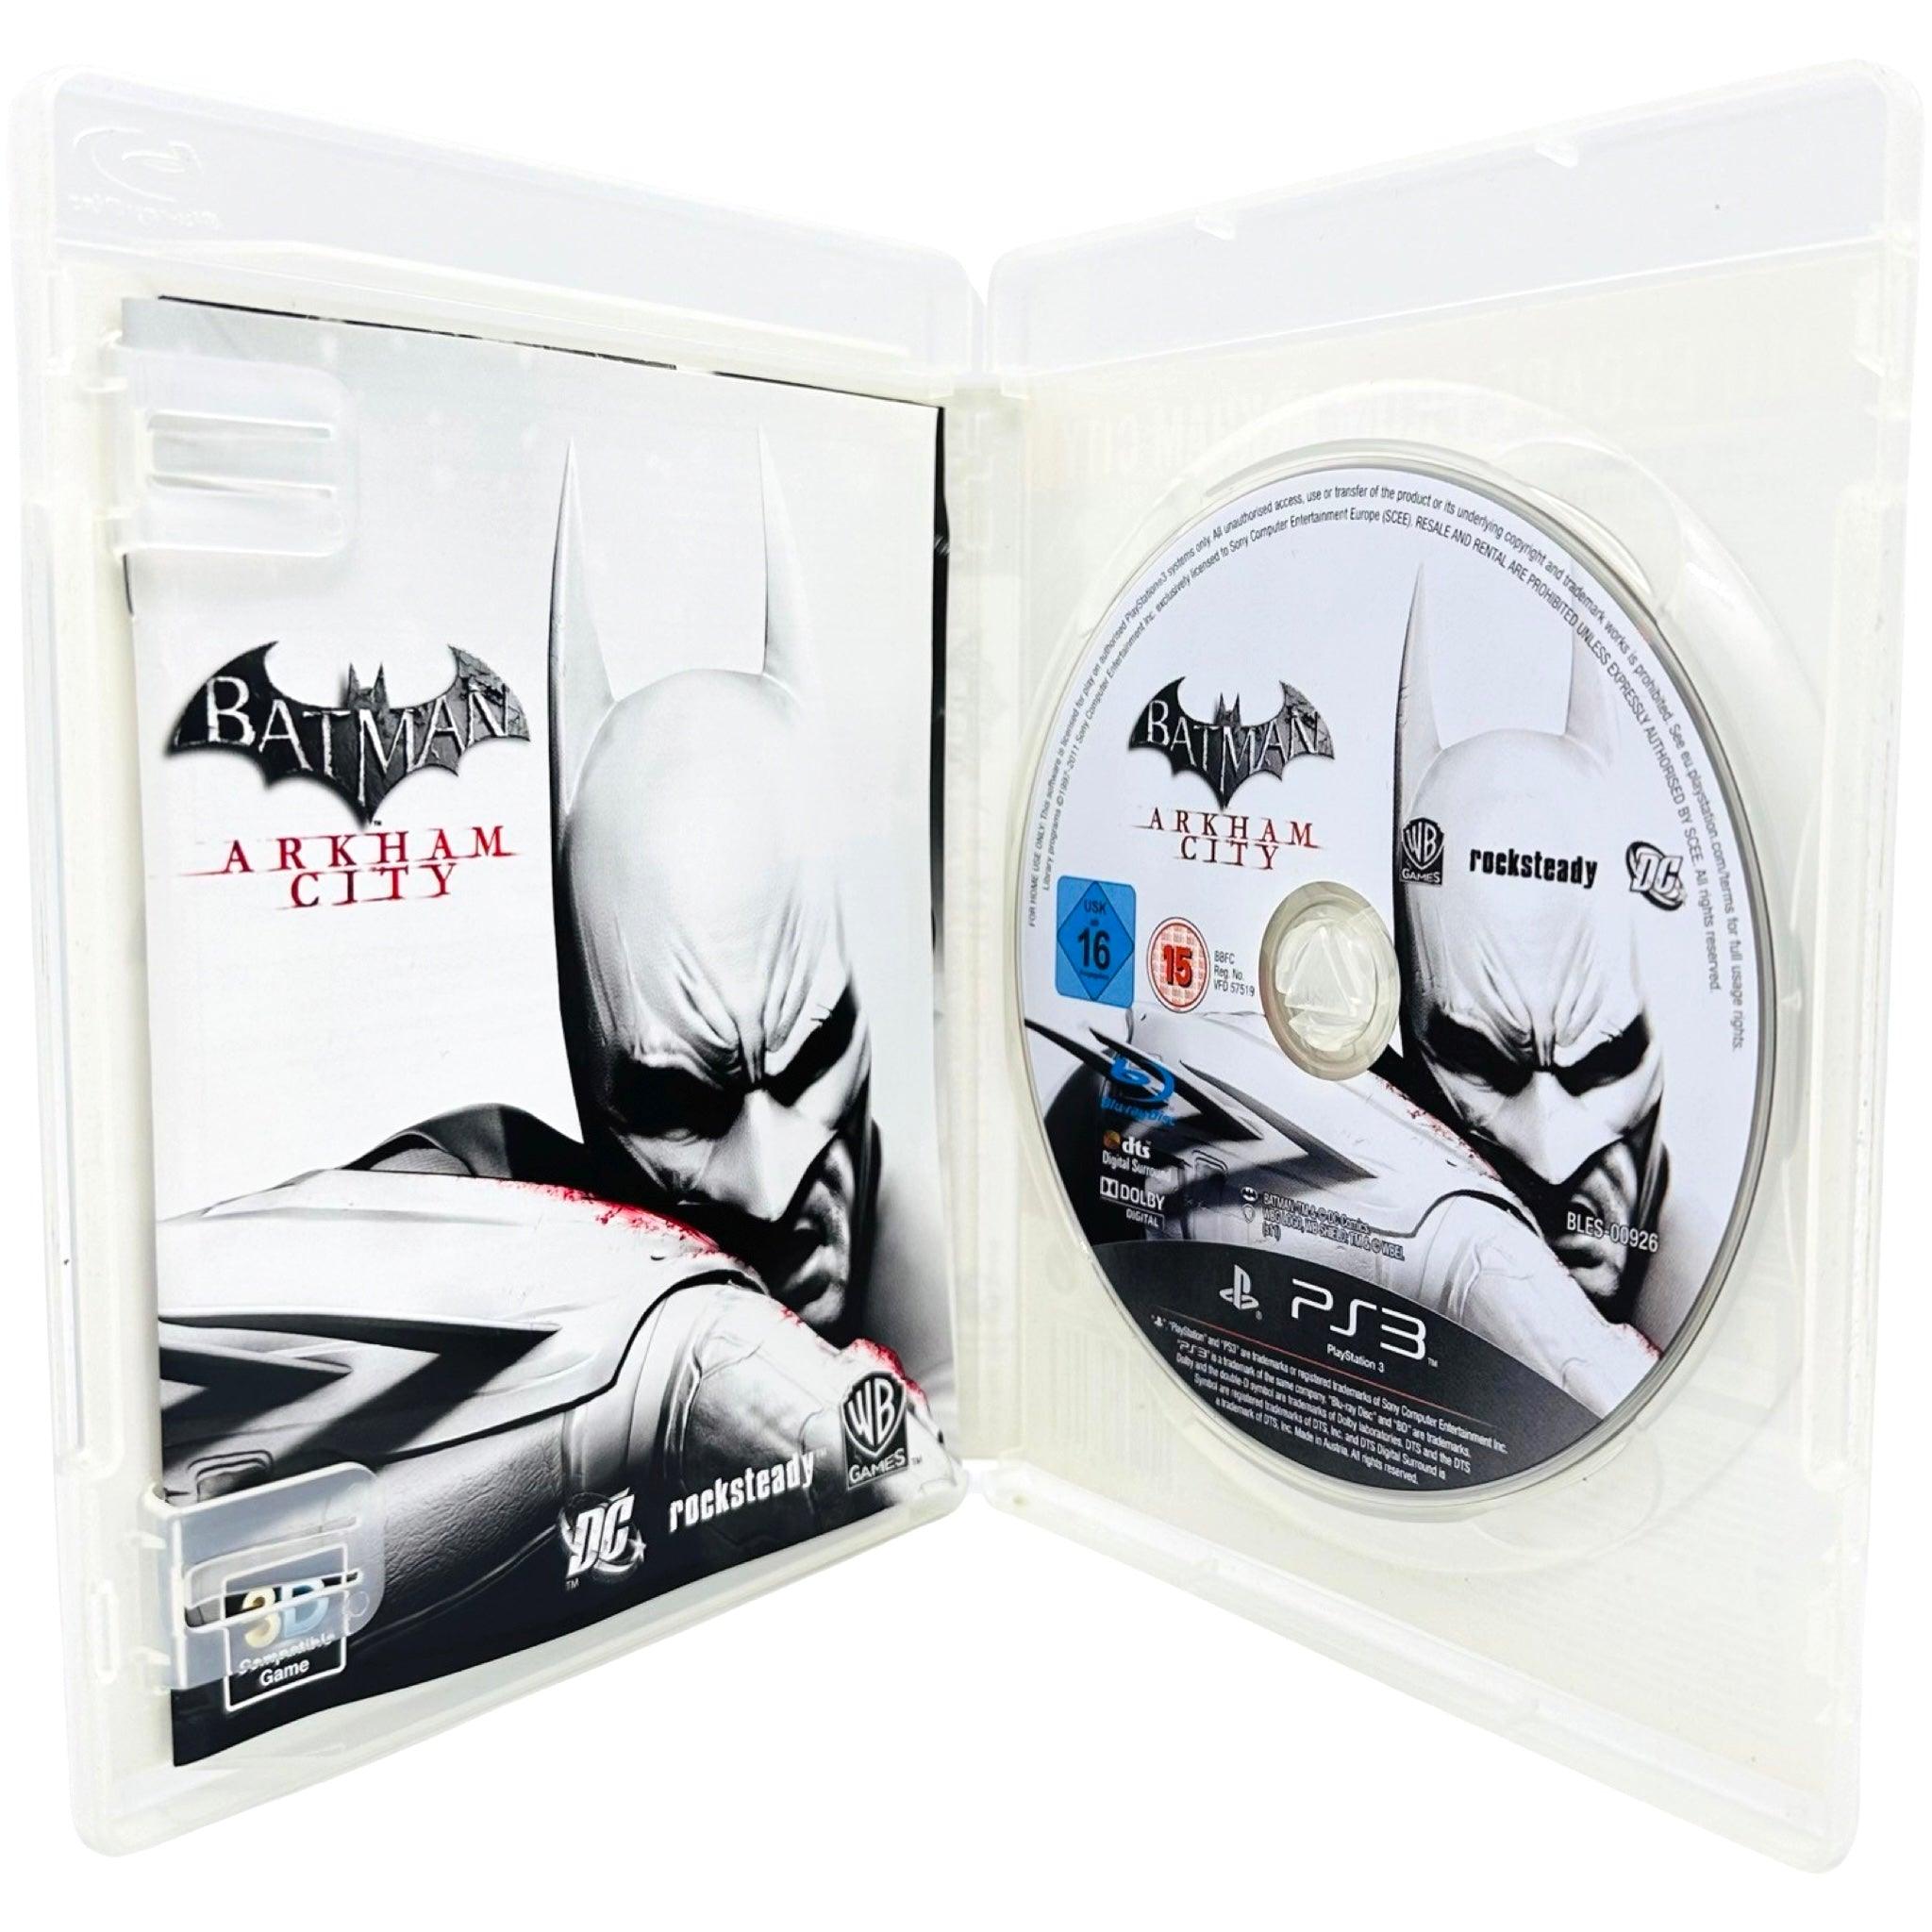 PS3: Batman: Arkham City - RetroGaming.no